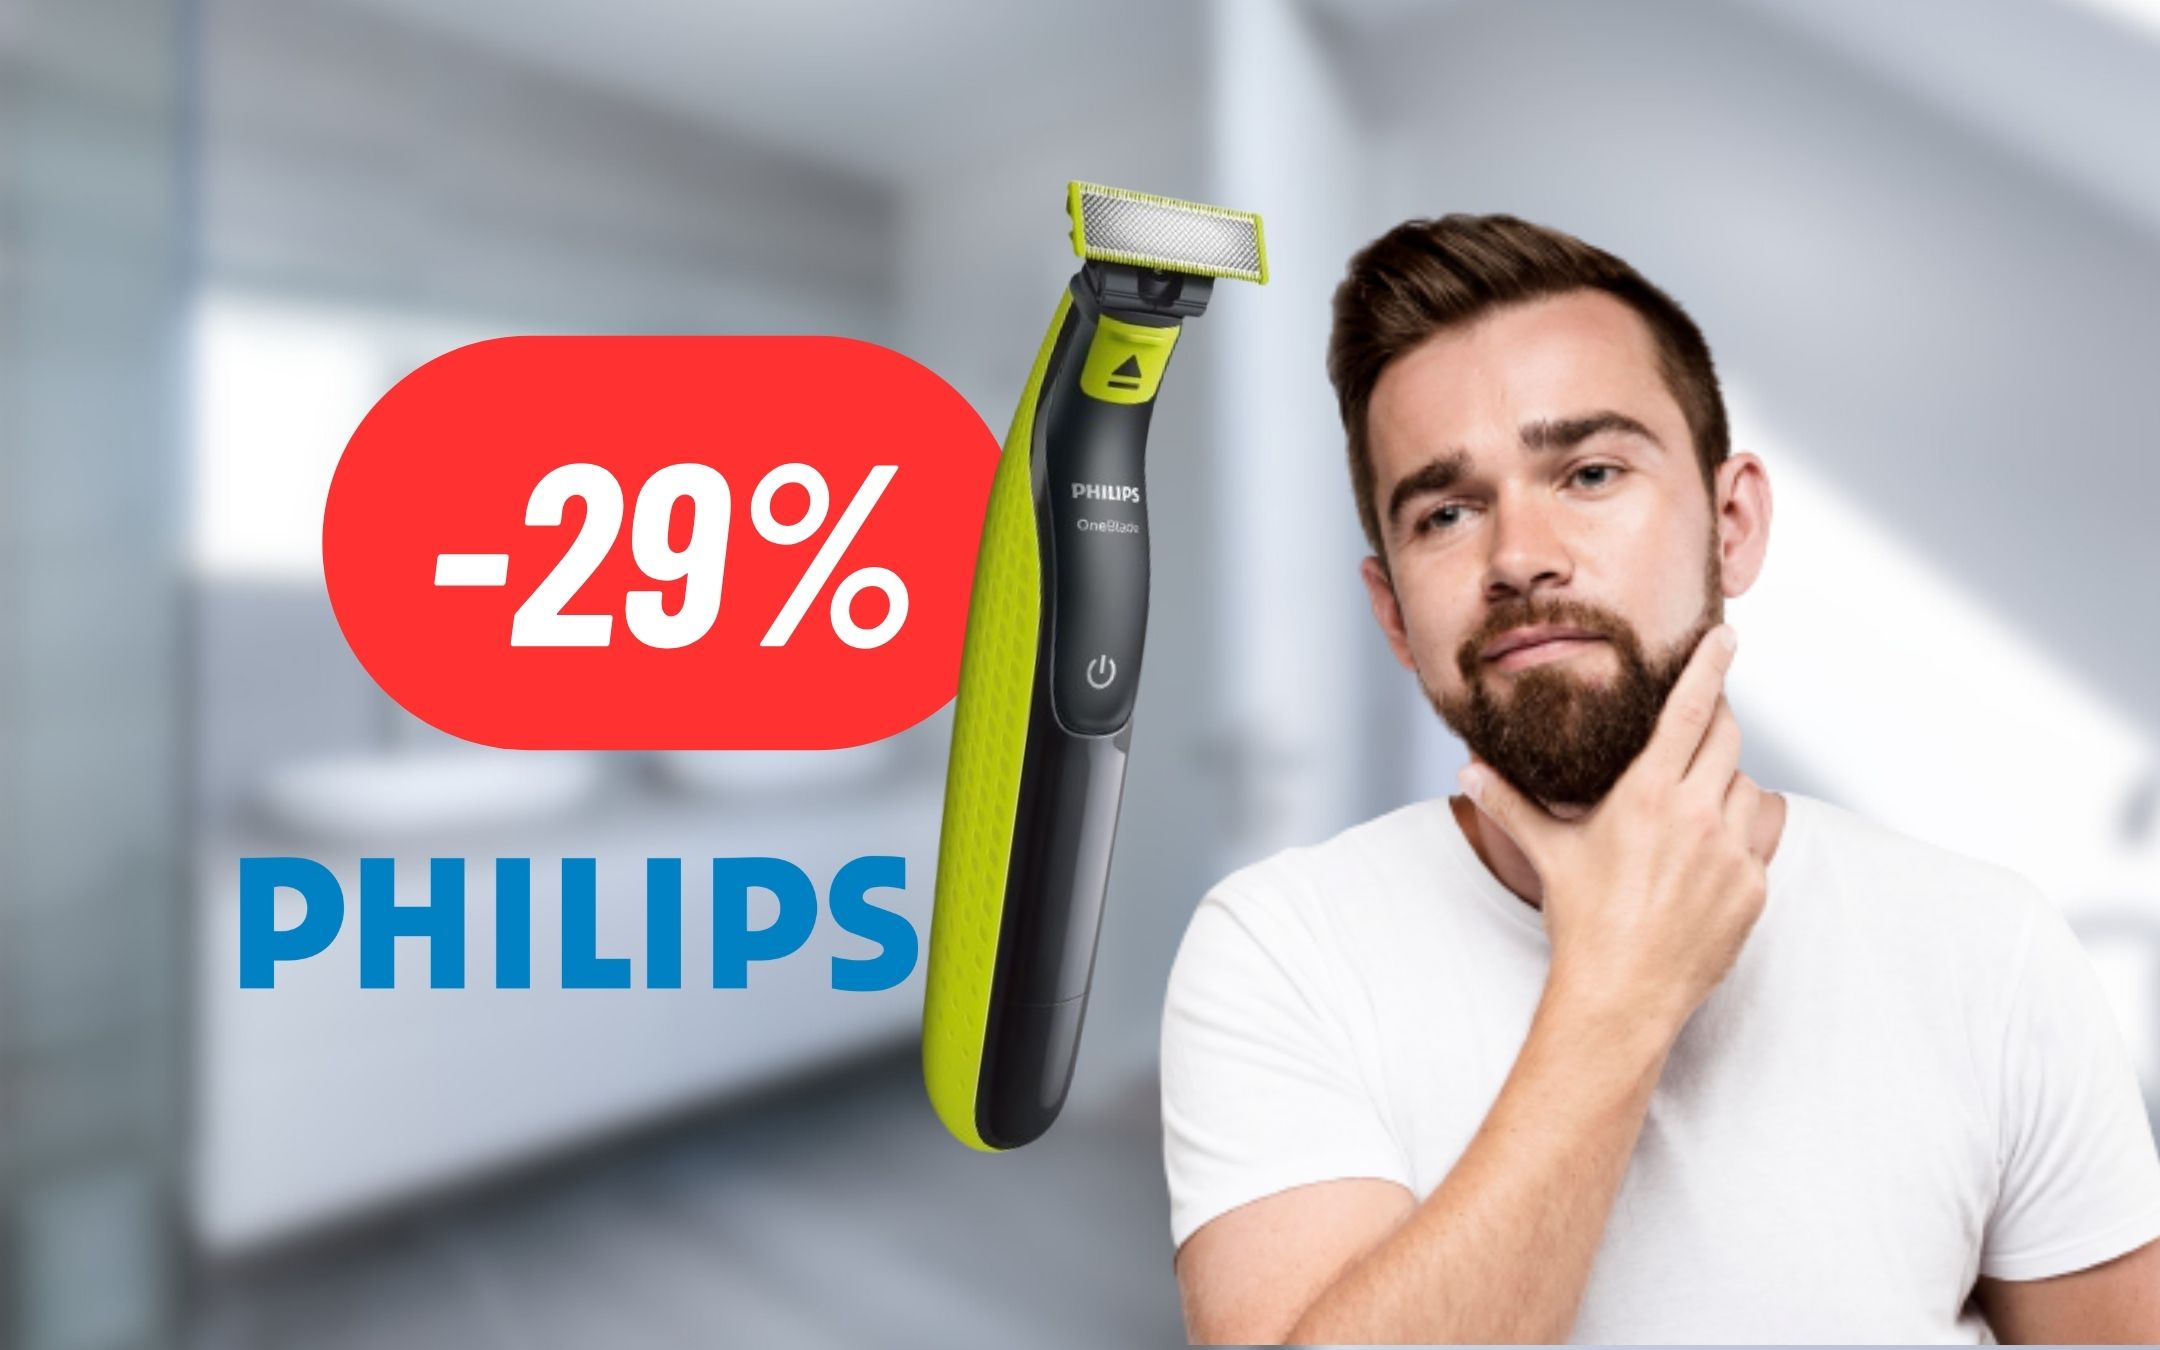 Philips è una garanzia anche per l'eccellente Rasoio Elettrico: BARBA  IMPECCABILE al 29% di sconto